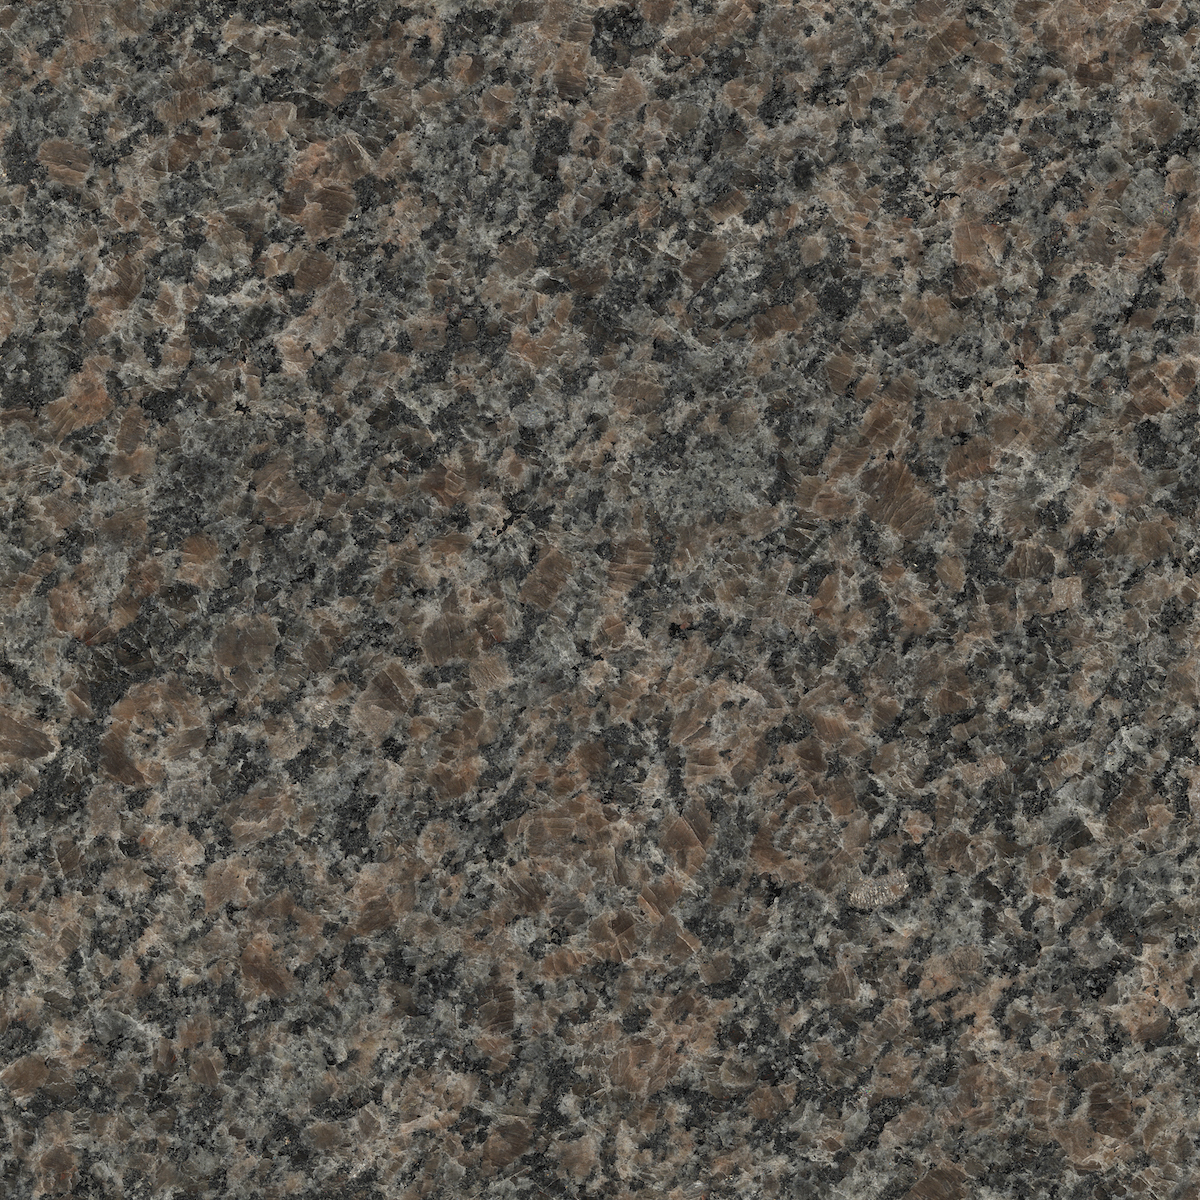 CALEDONIA™ granite